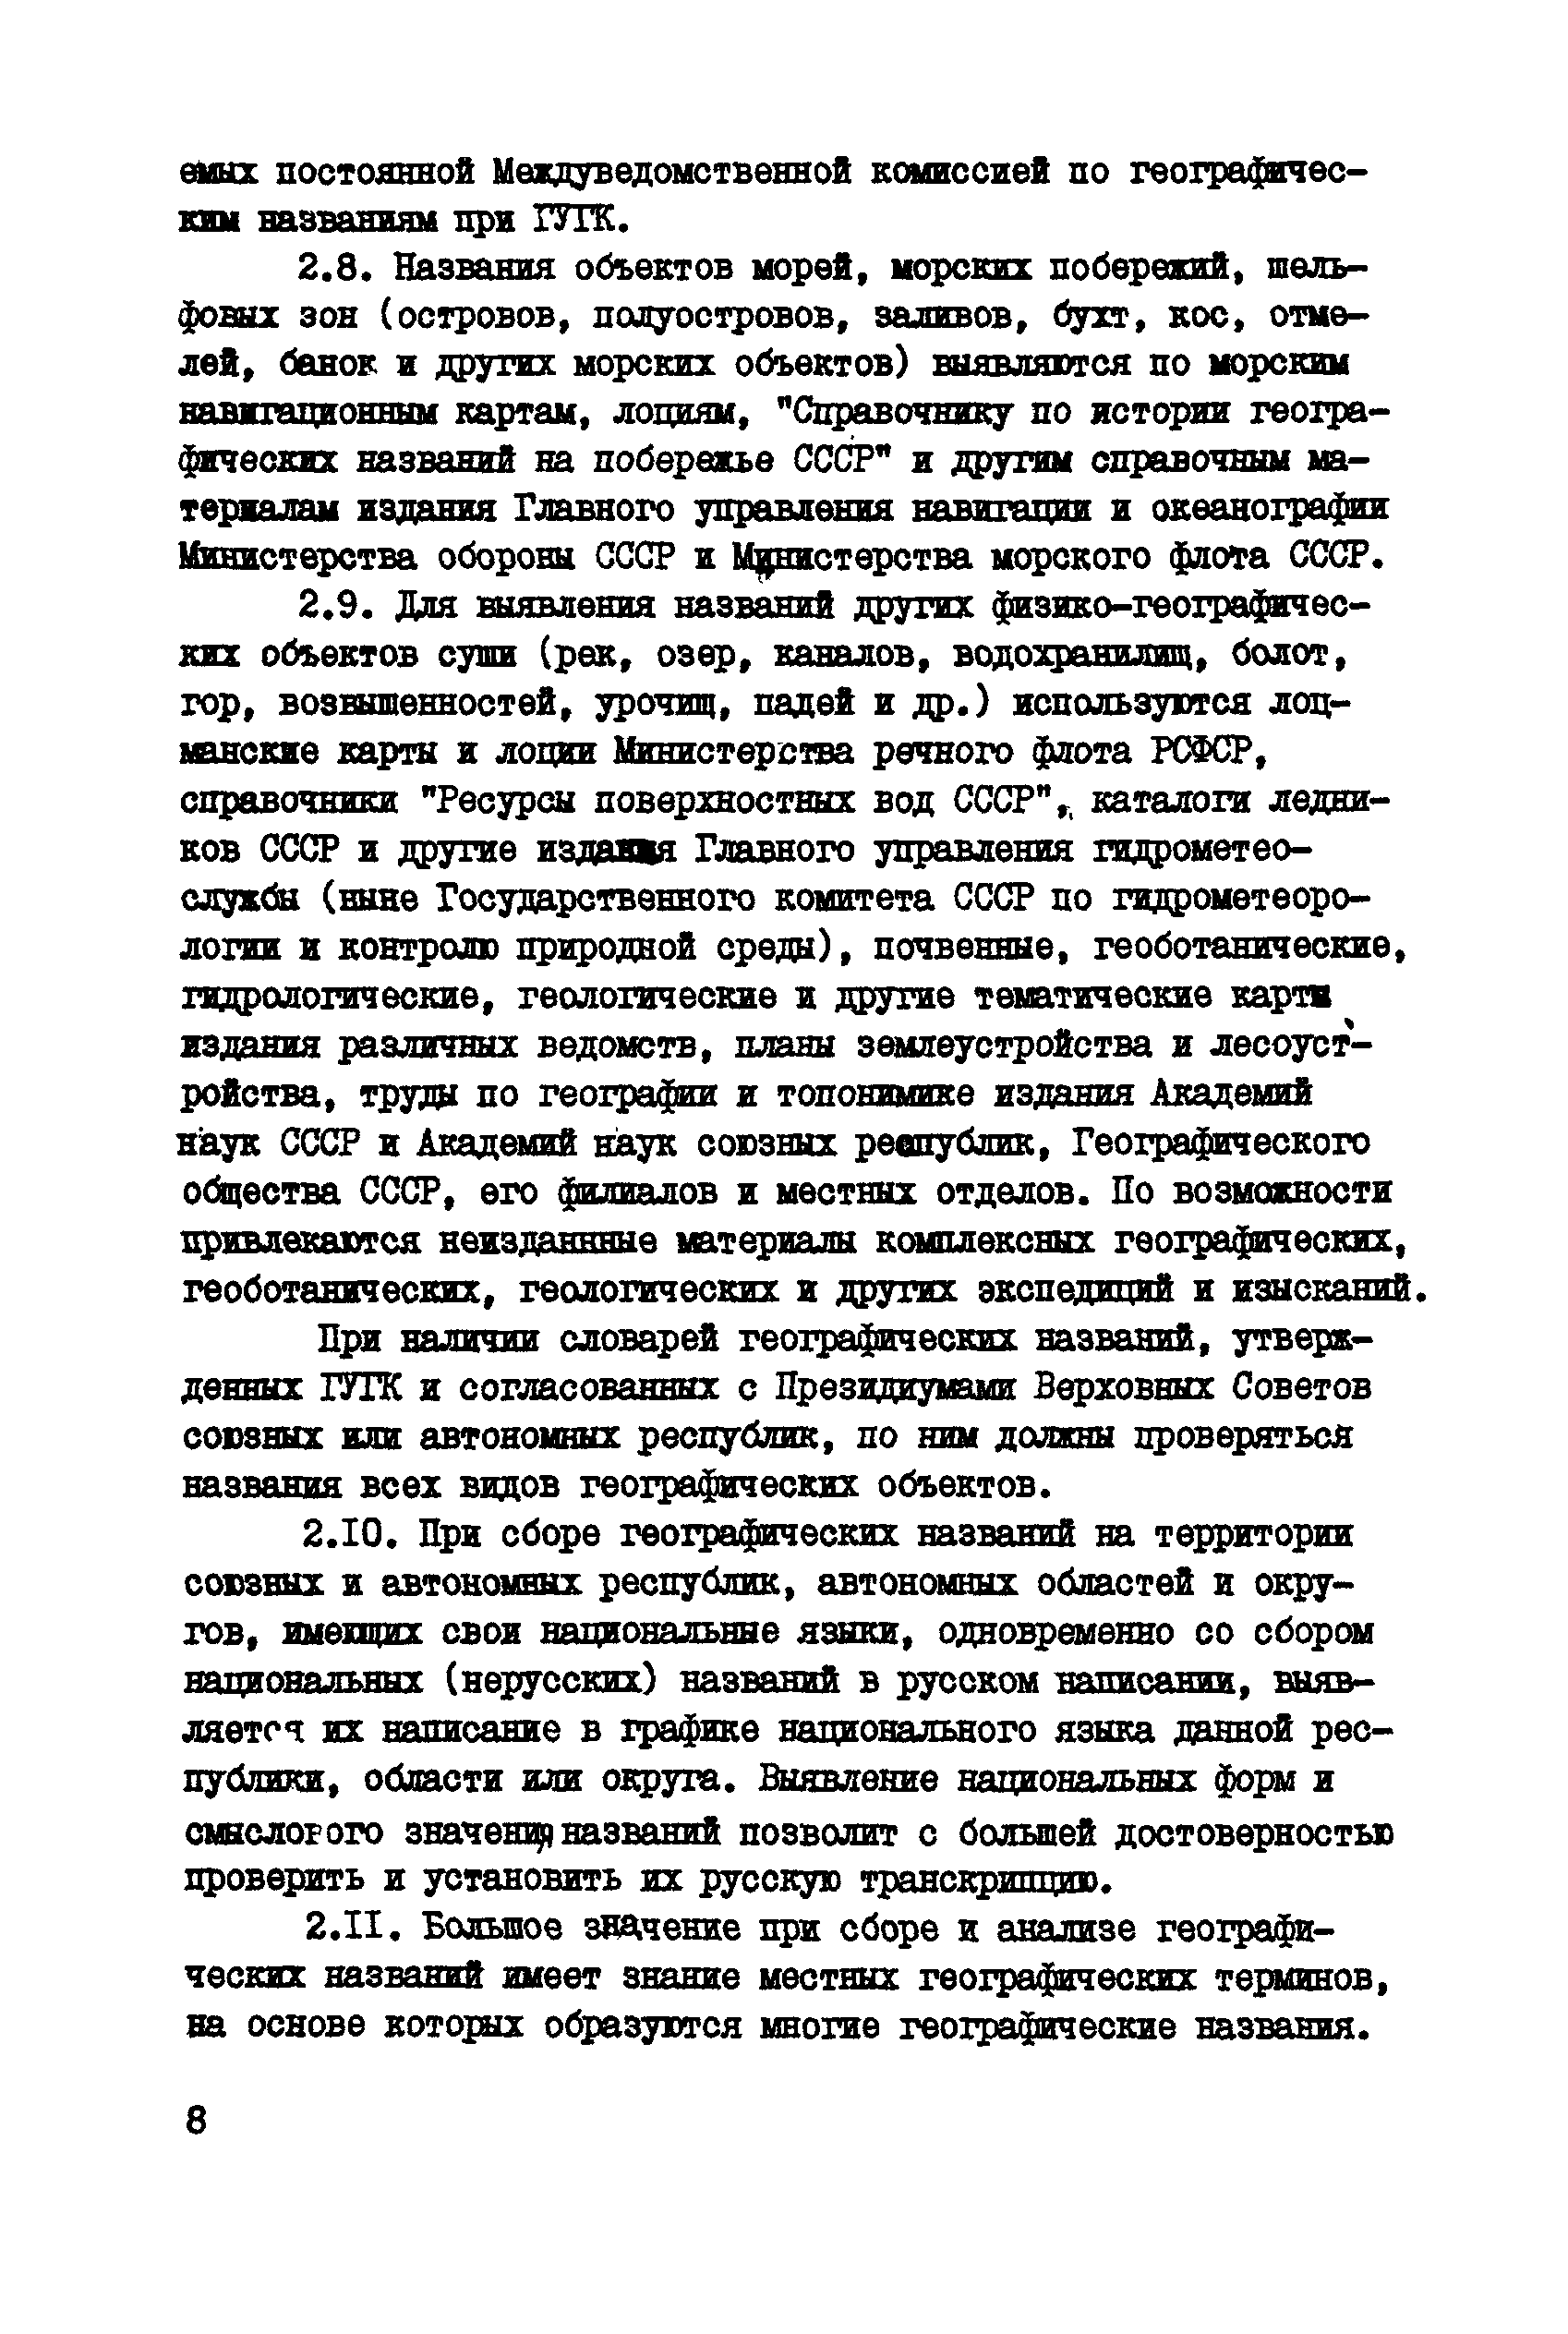 ГКИНП 13-42-82